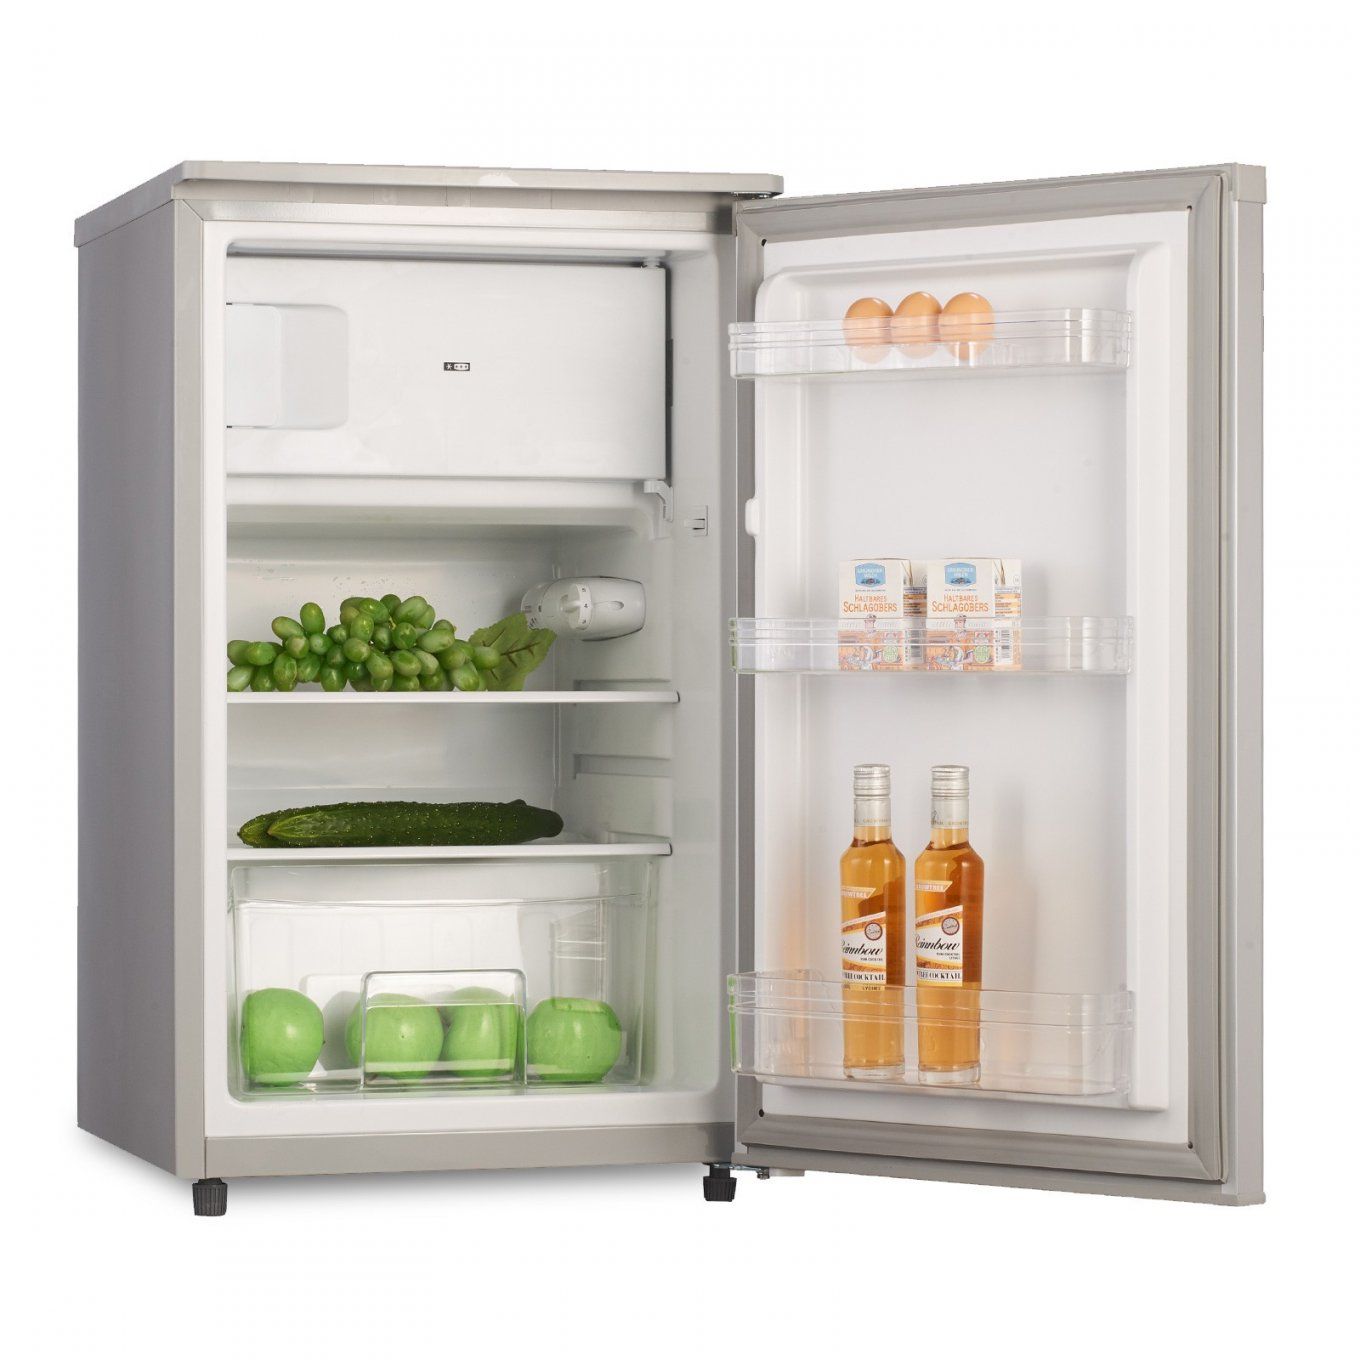 Superb Gebrauchte Kühlschränke Mit Gefrierfach Muster  Beste Möbel von Billige Kühlschränke Mit Gefrierfach Bild